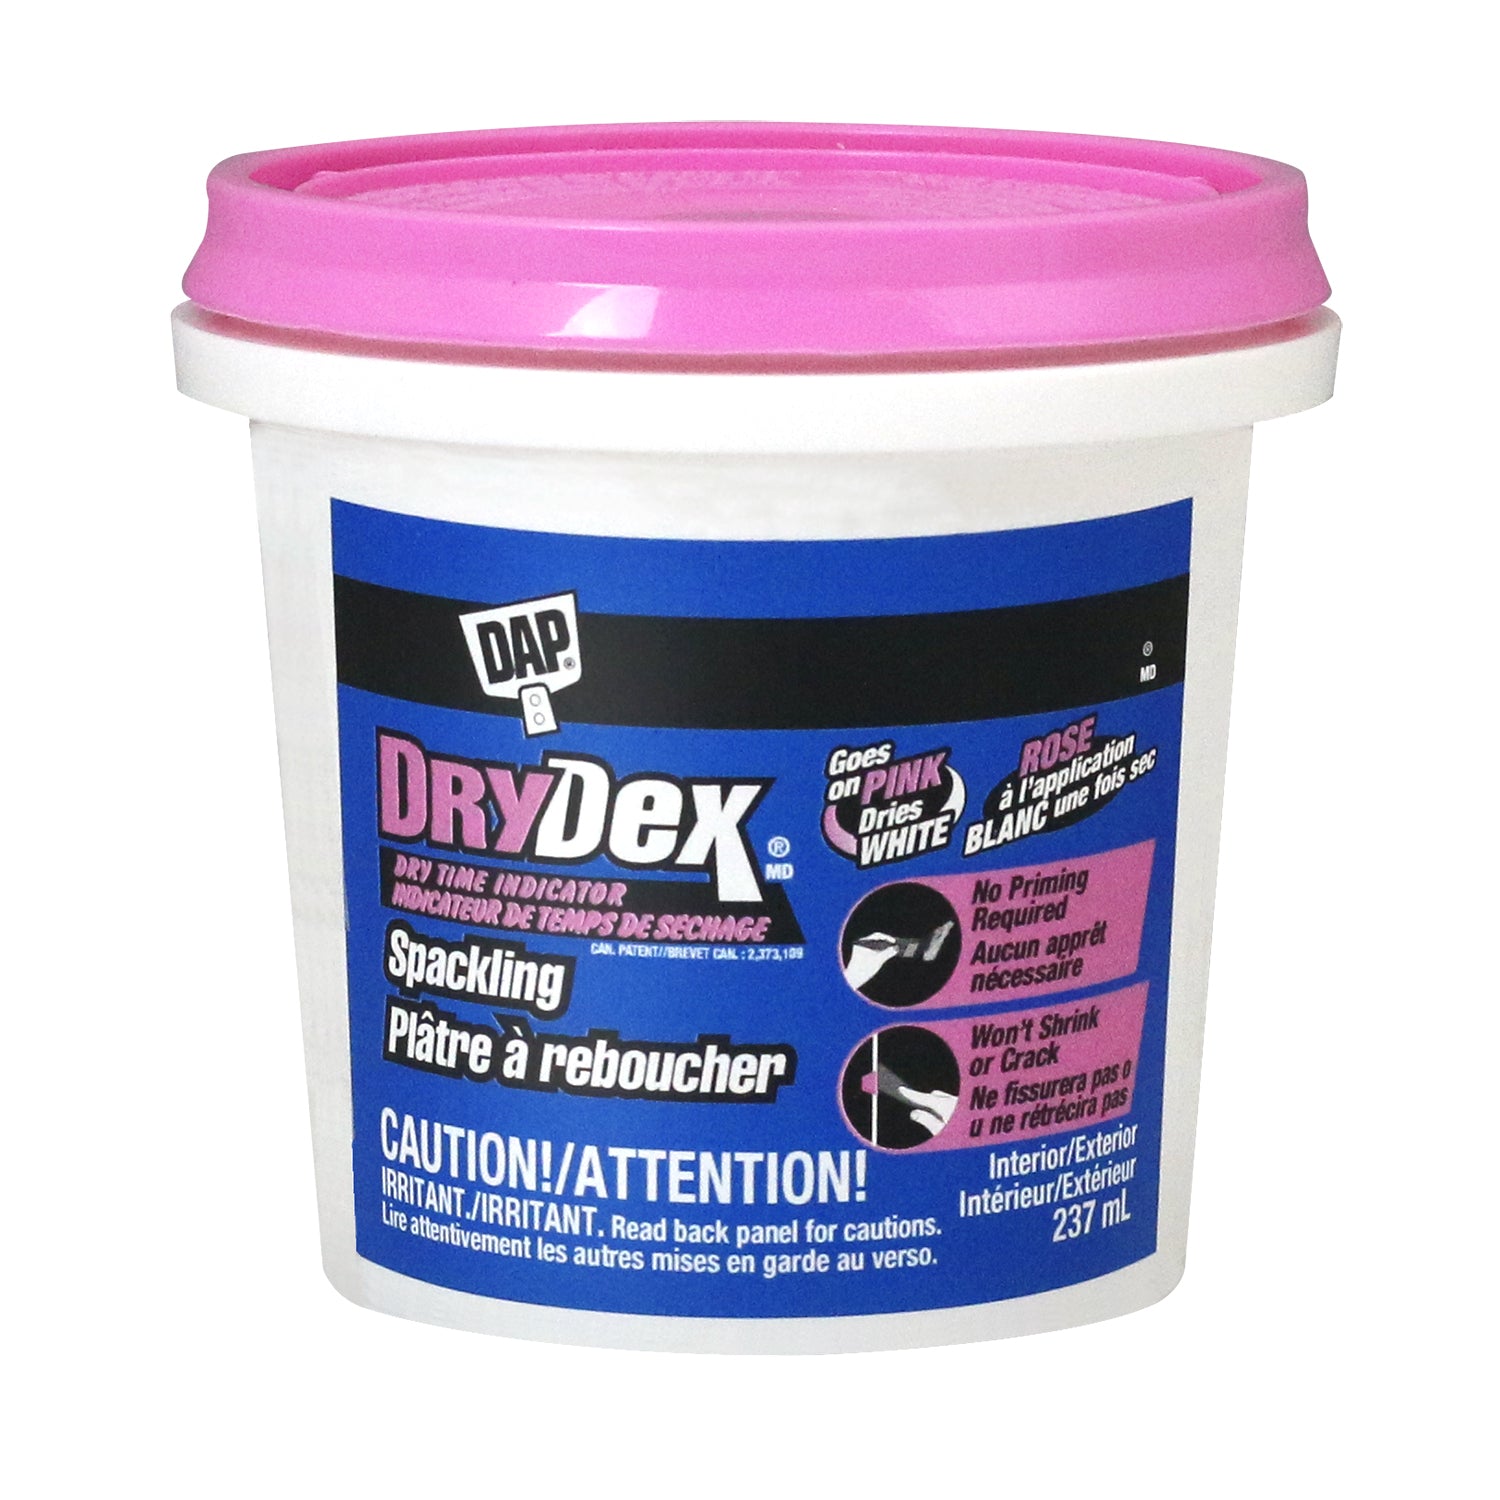 DAP DryDex  Dry Time Indicator Spackling PINK/WHITE 237 ML